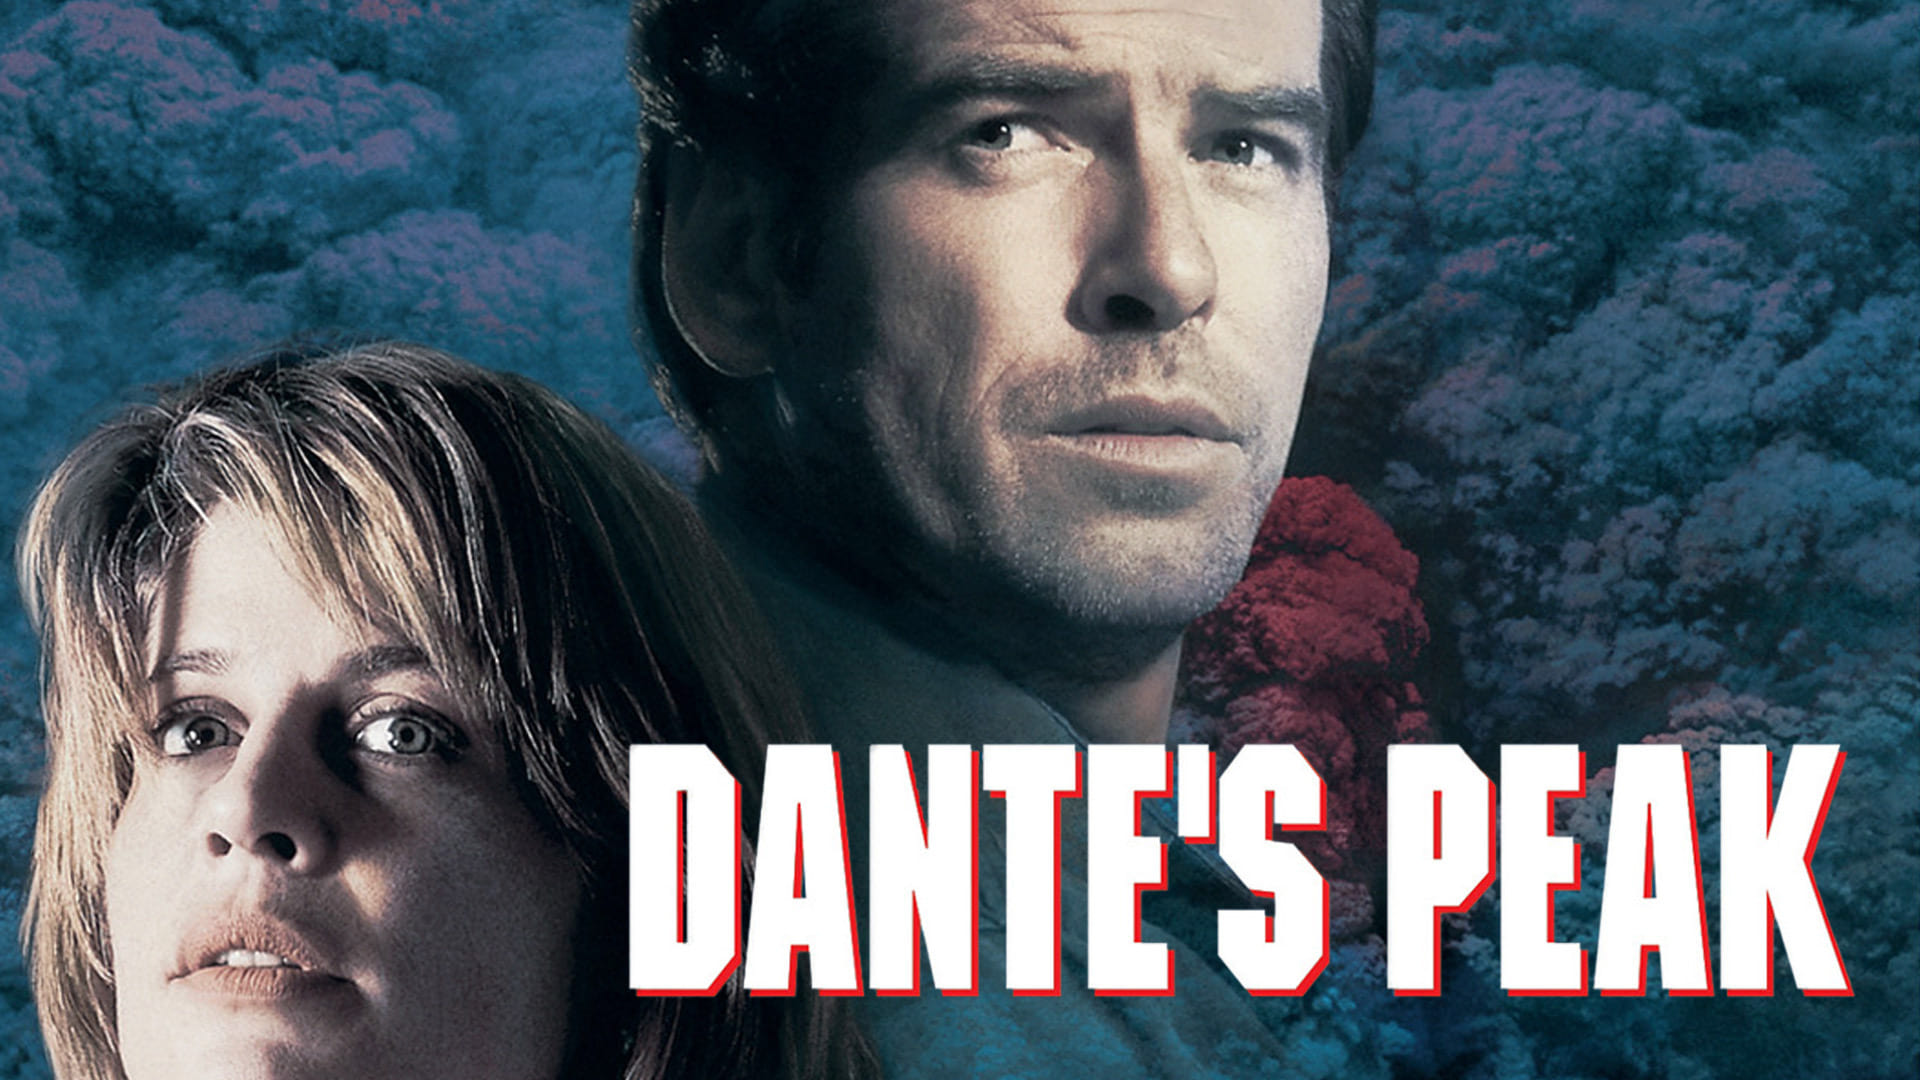 Dante's Peak (1997)